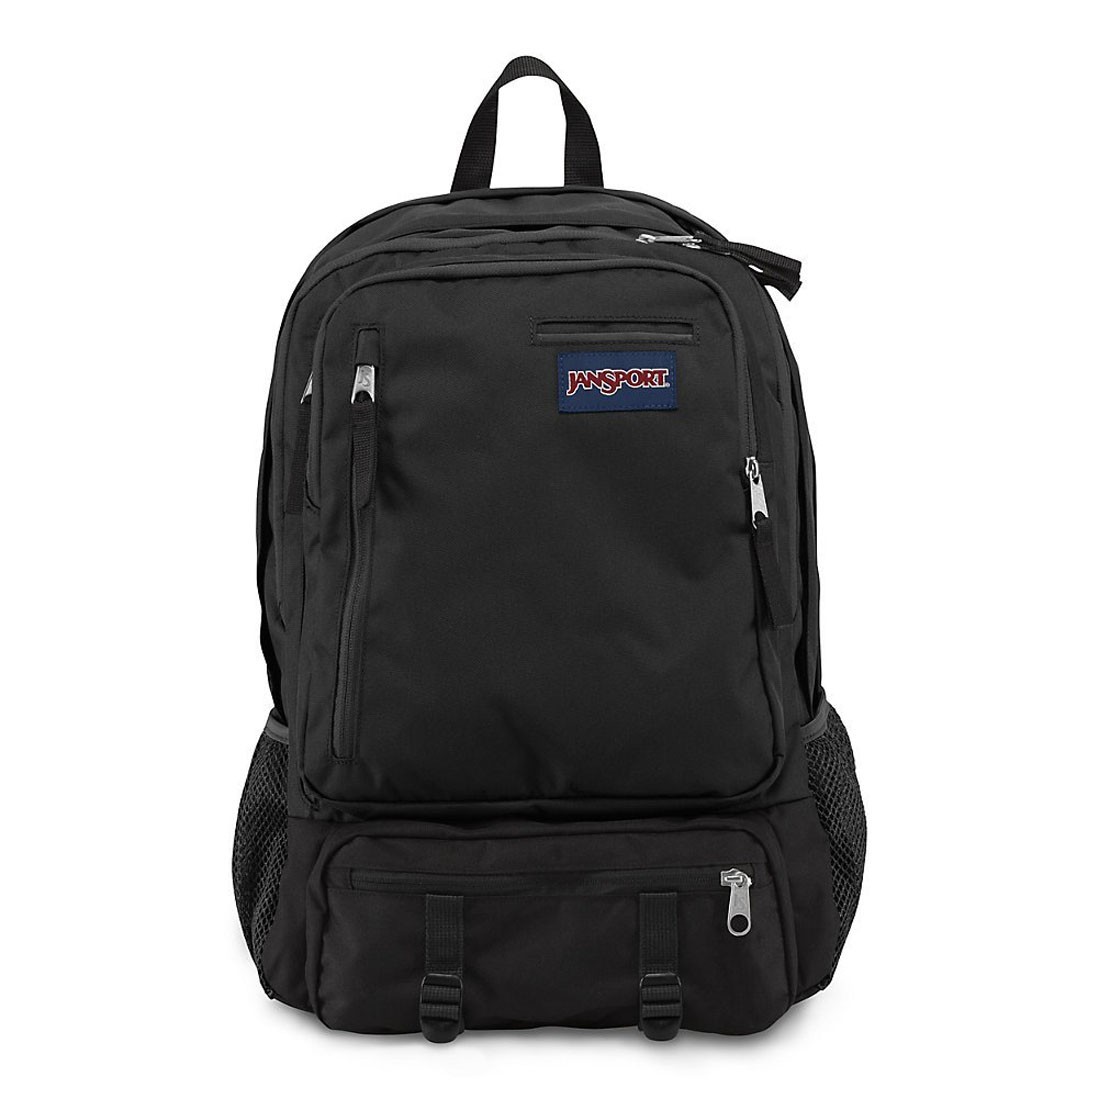 Buy JanSport Envoy Laptop Backpack - Black - JanSport, delivered to ...